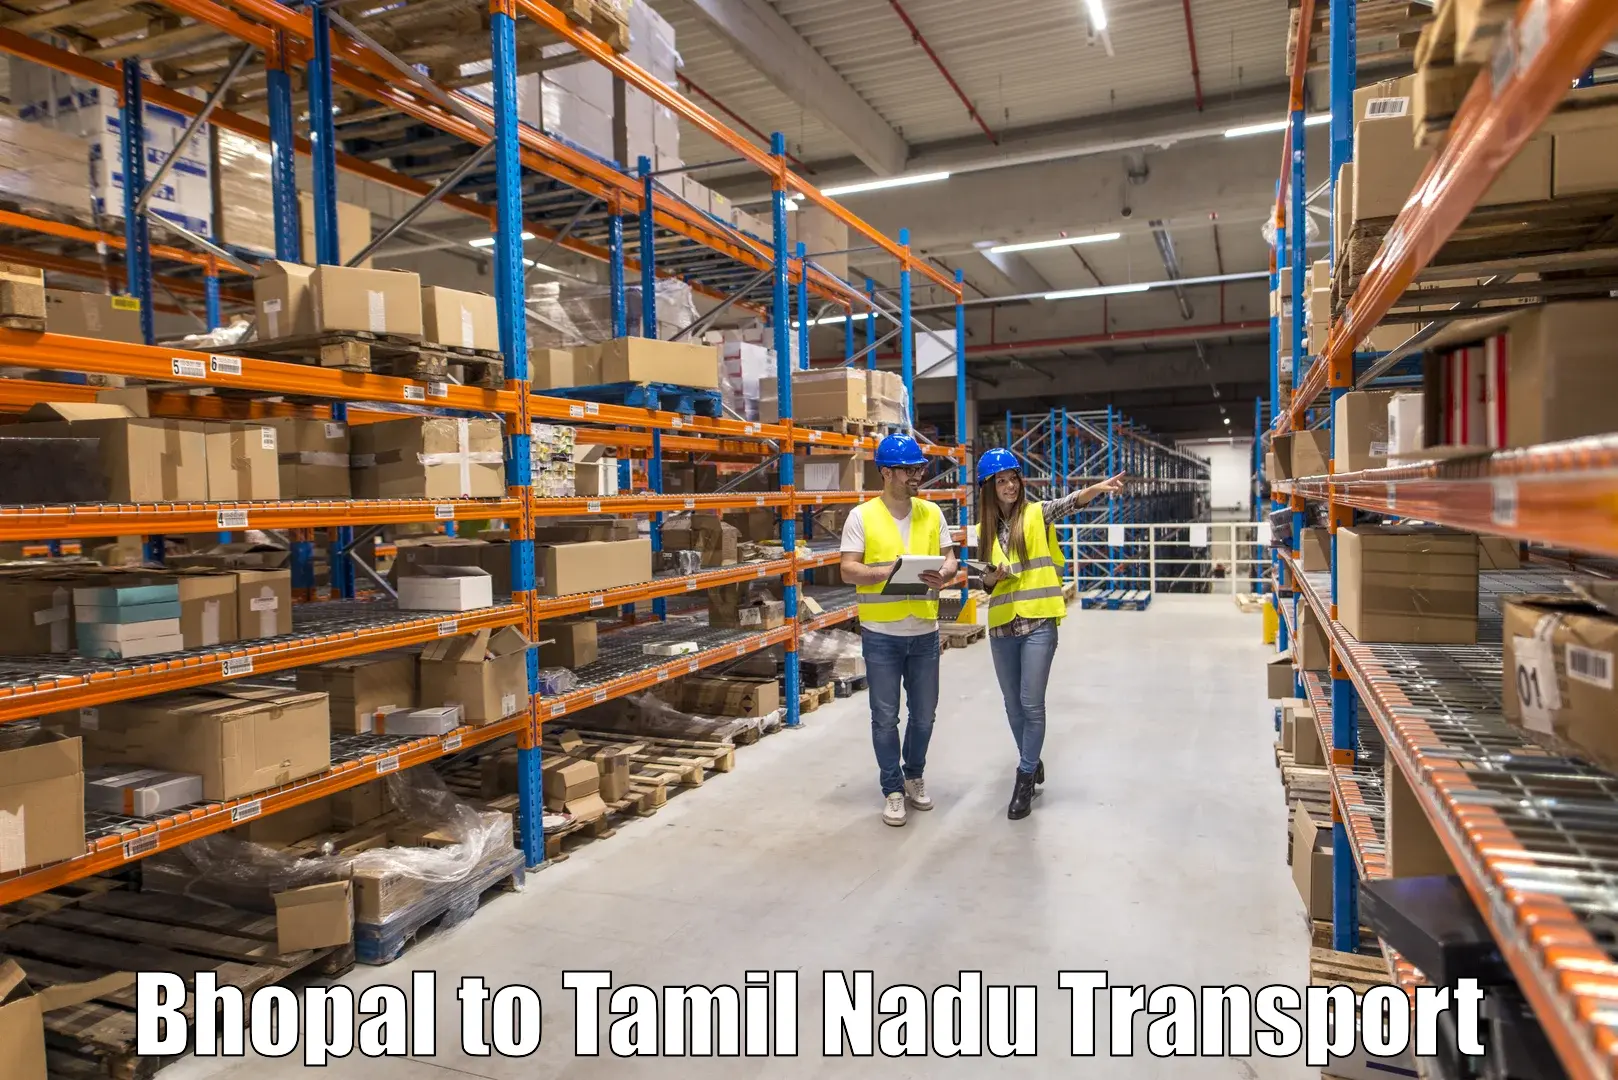 Furniture transport service Bhopal to Perundurai